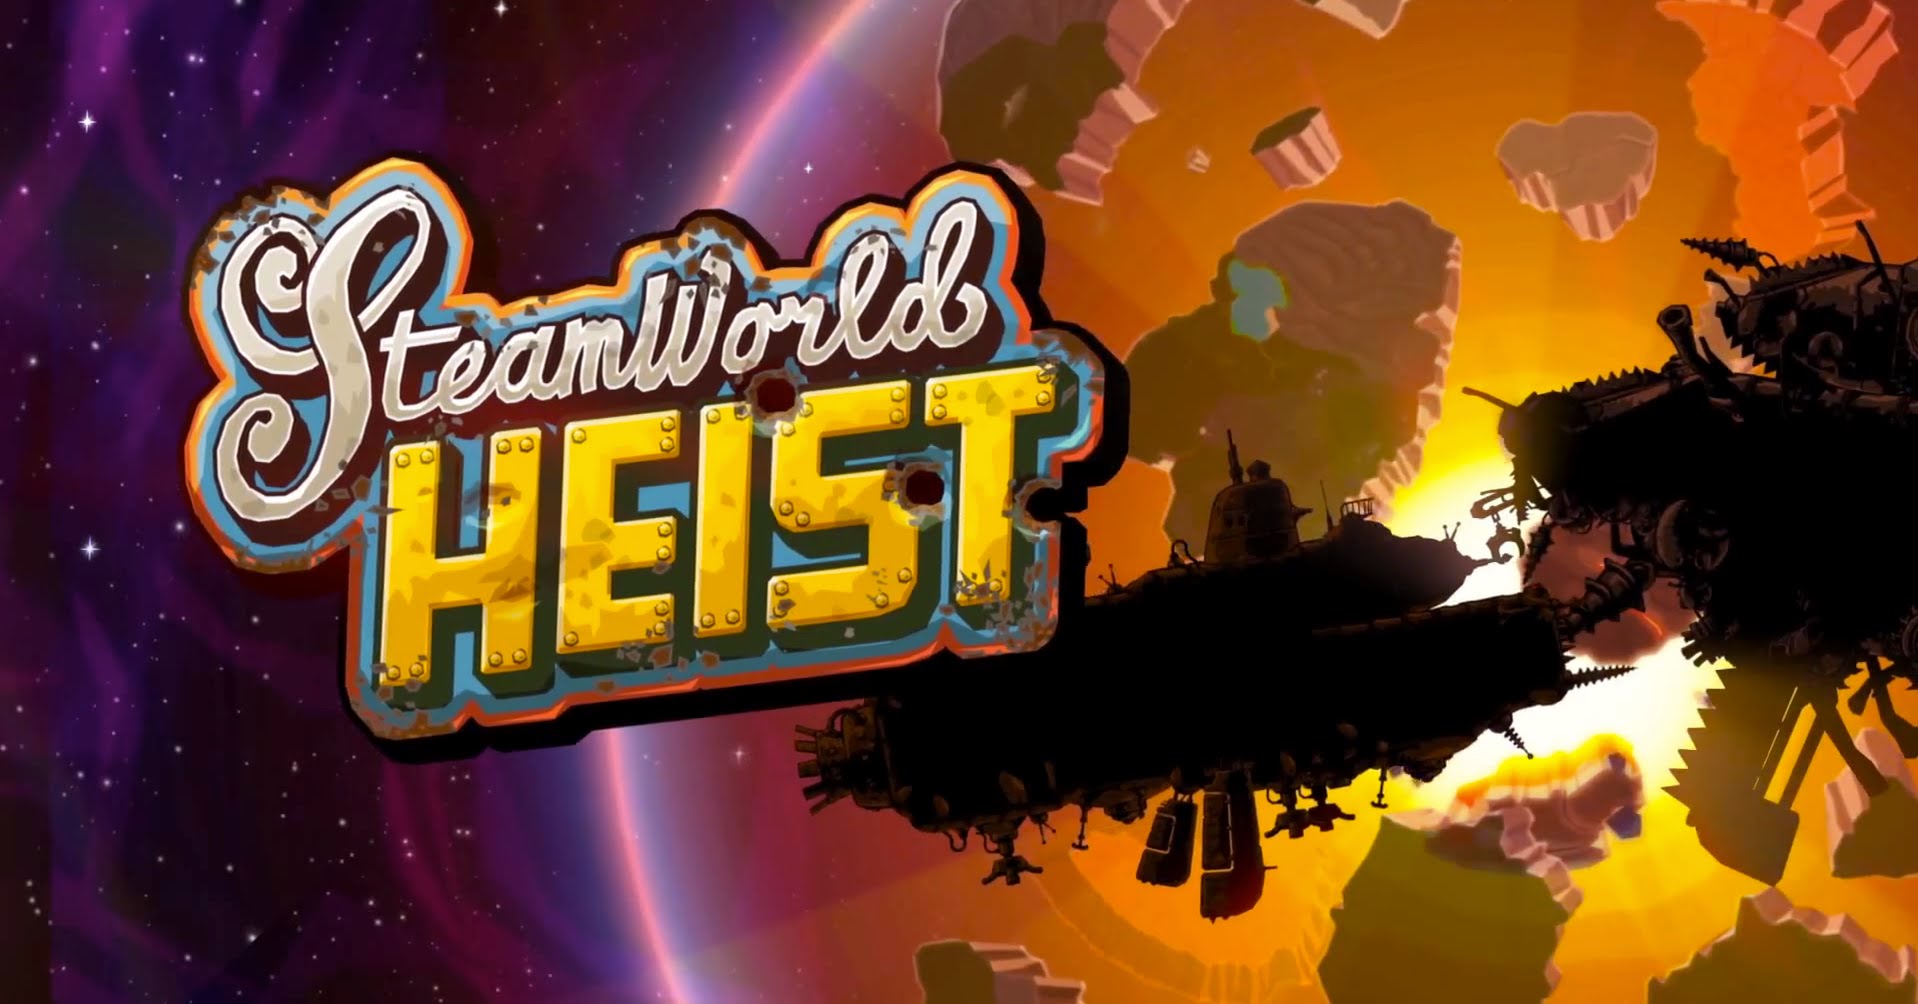 Rivelati la data d’uscita, il prezzo, e contenuti extra per SteamWorld Heist!